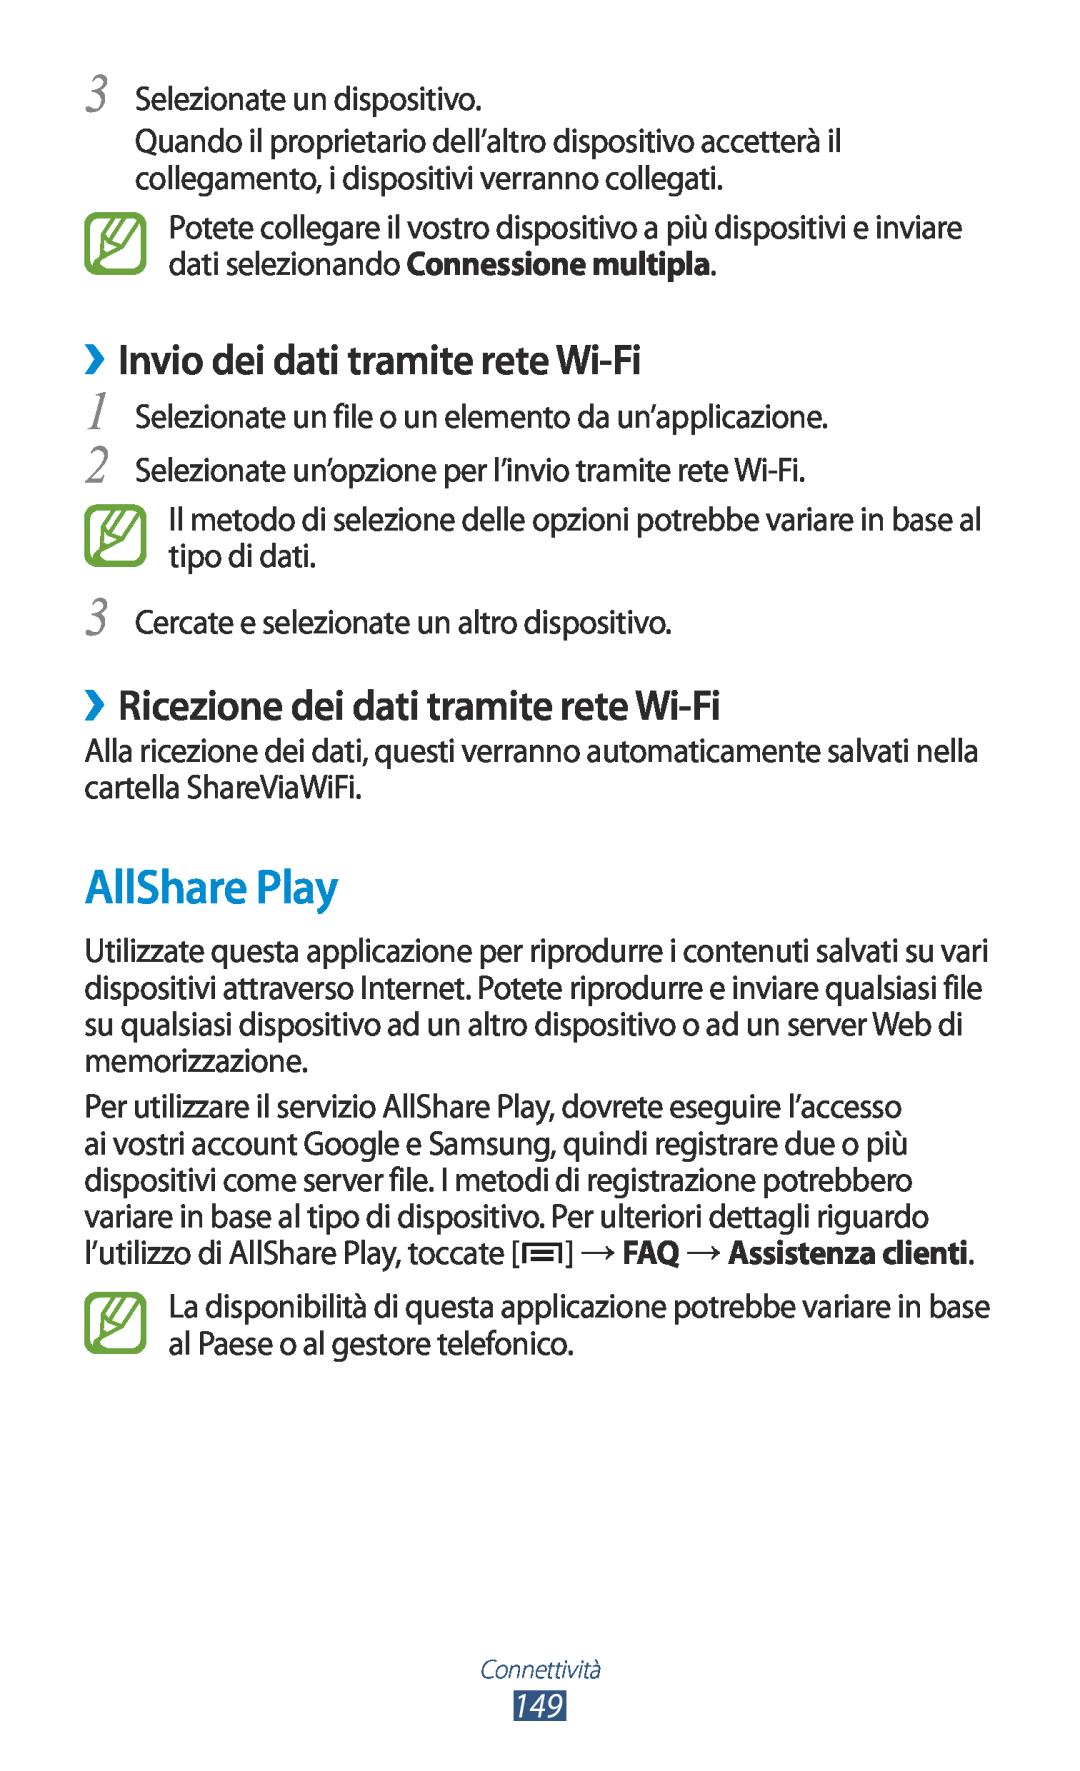 Samsung GT-N7000RWAOMN manual AllShare Play, ››Invio dei dati tramite rete Wi-Fi, ››Ricezione dei dati tramite rete Wi-Fi 